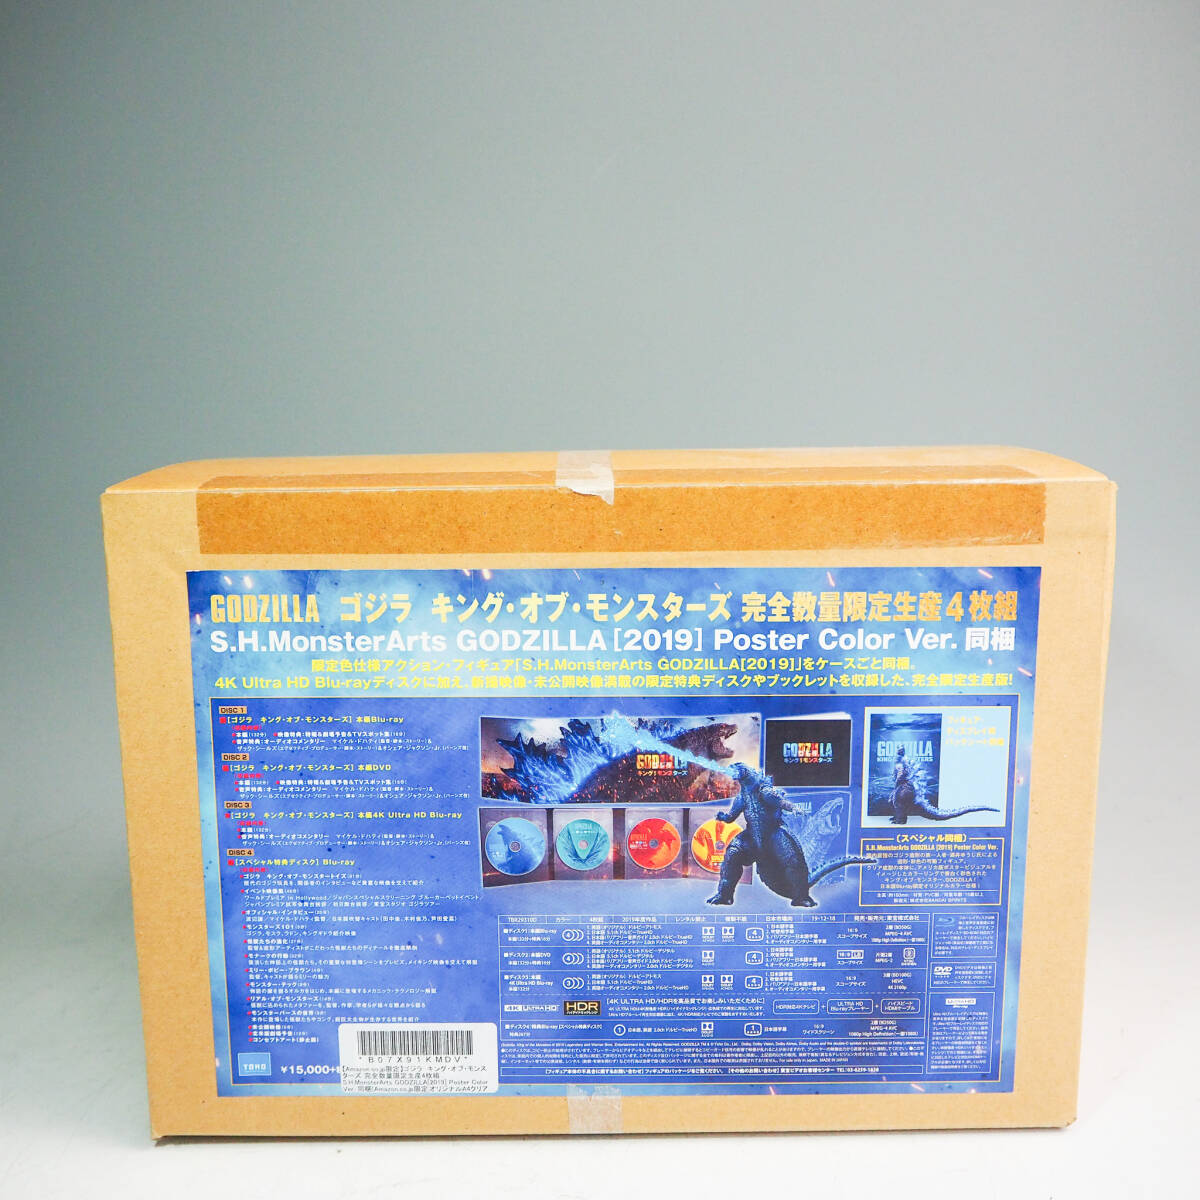 ゴジラ キング・オブ・モンスターズ 完全数量限定生産4枚組 S.H.MonsterArts GODZILLA[2019] Poster Color Ver. Blu-ray K4833の画像4